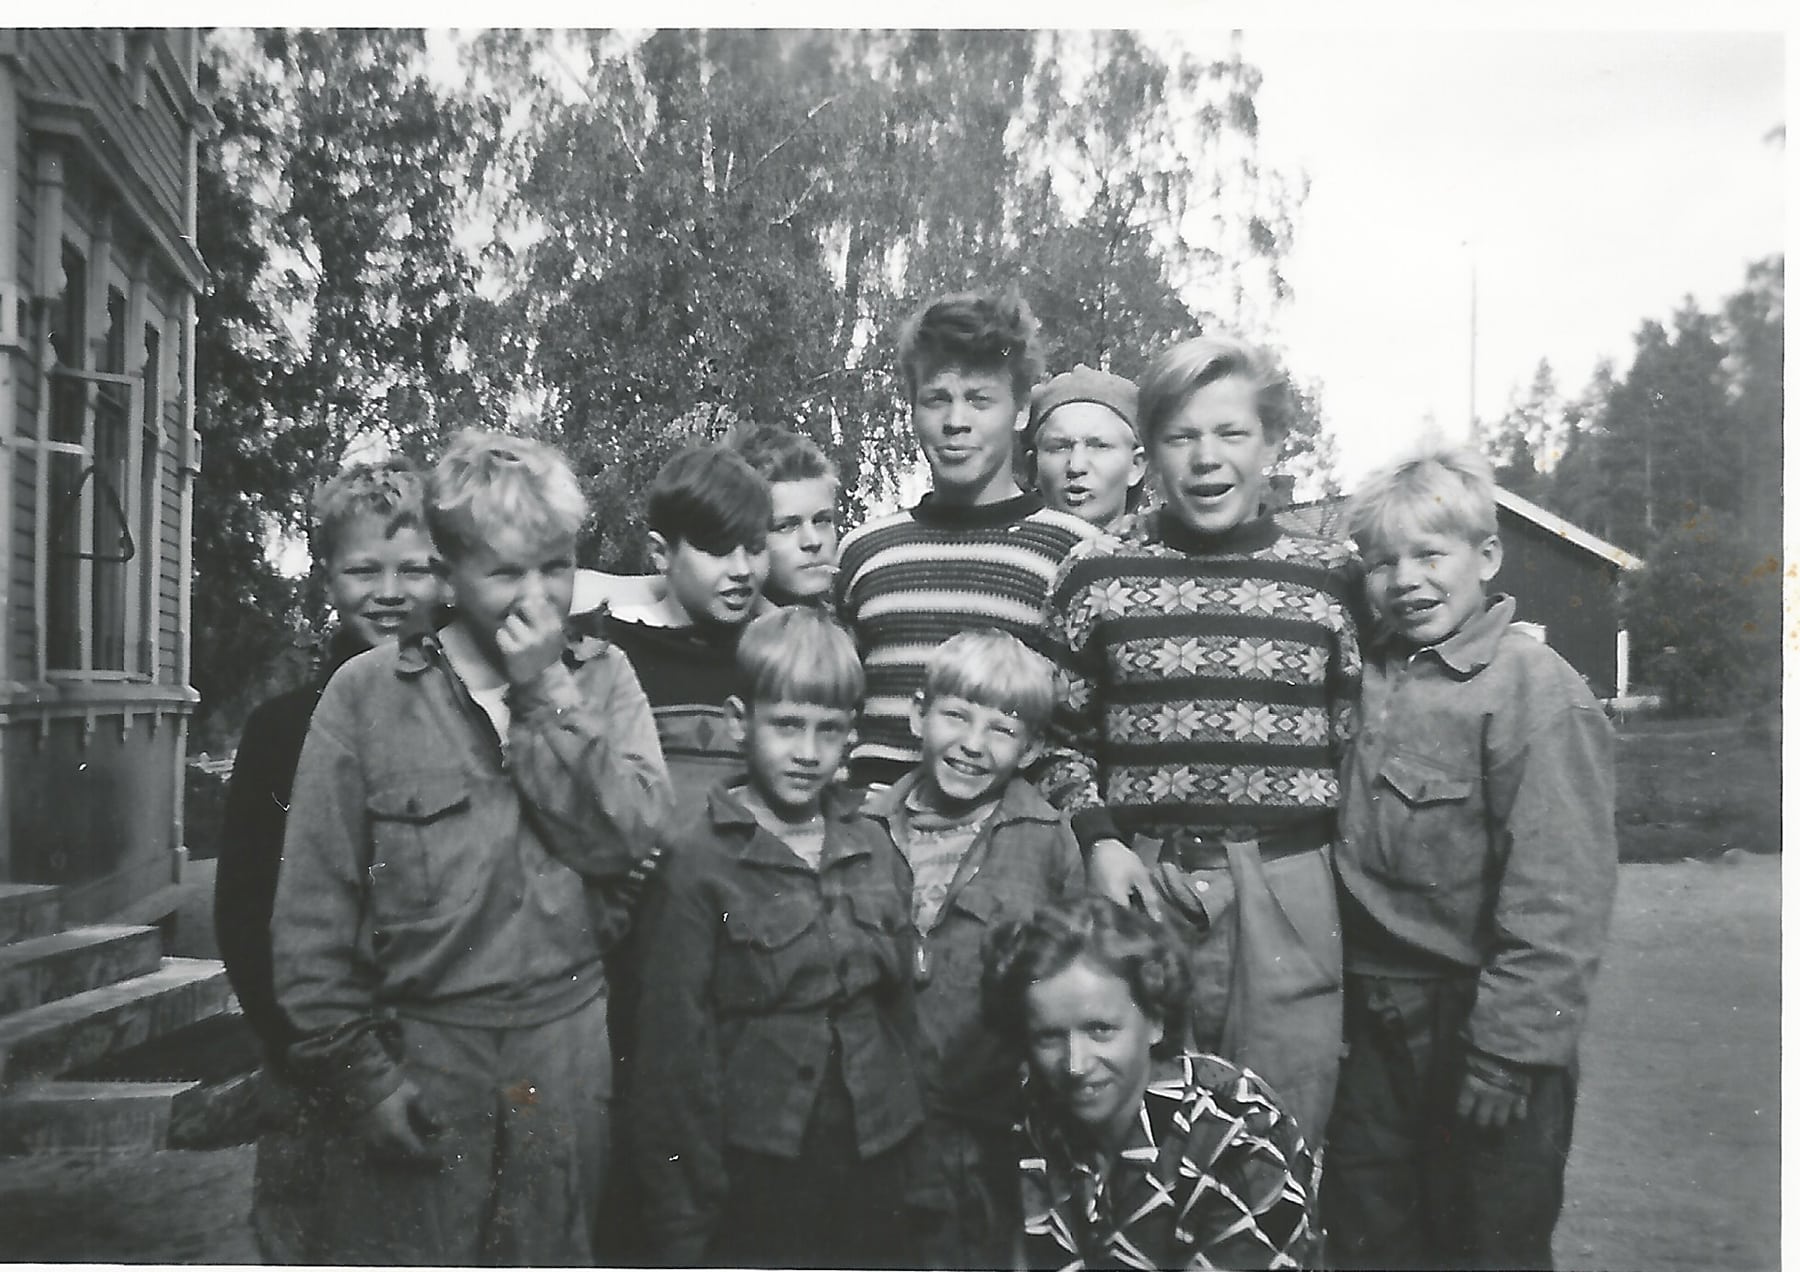 Järvilinnan poikia yhteiskuvassa, 1960-luku. Kuvan henkilöt ja kuvan lahjoittaja eivät liity tekstissä tarkasteltavaan kirjeeseen. Kuvalähde: Pauli Heinämäen kotialbumi.